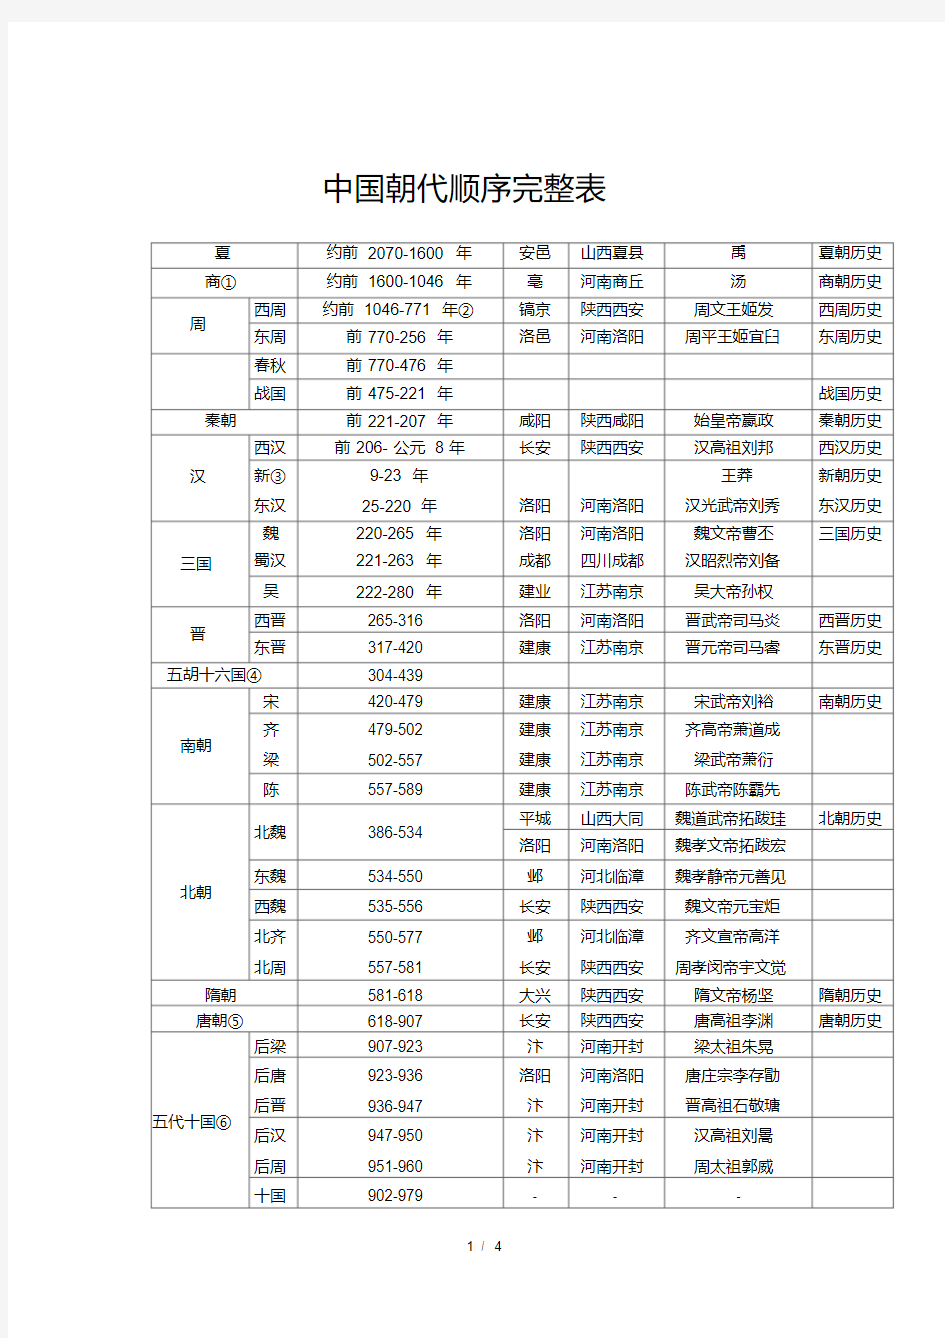 中国朝代顺序完整表